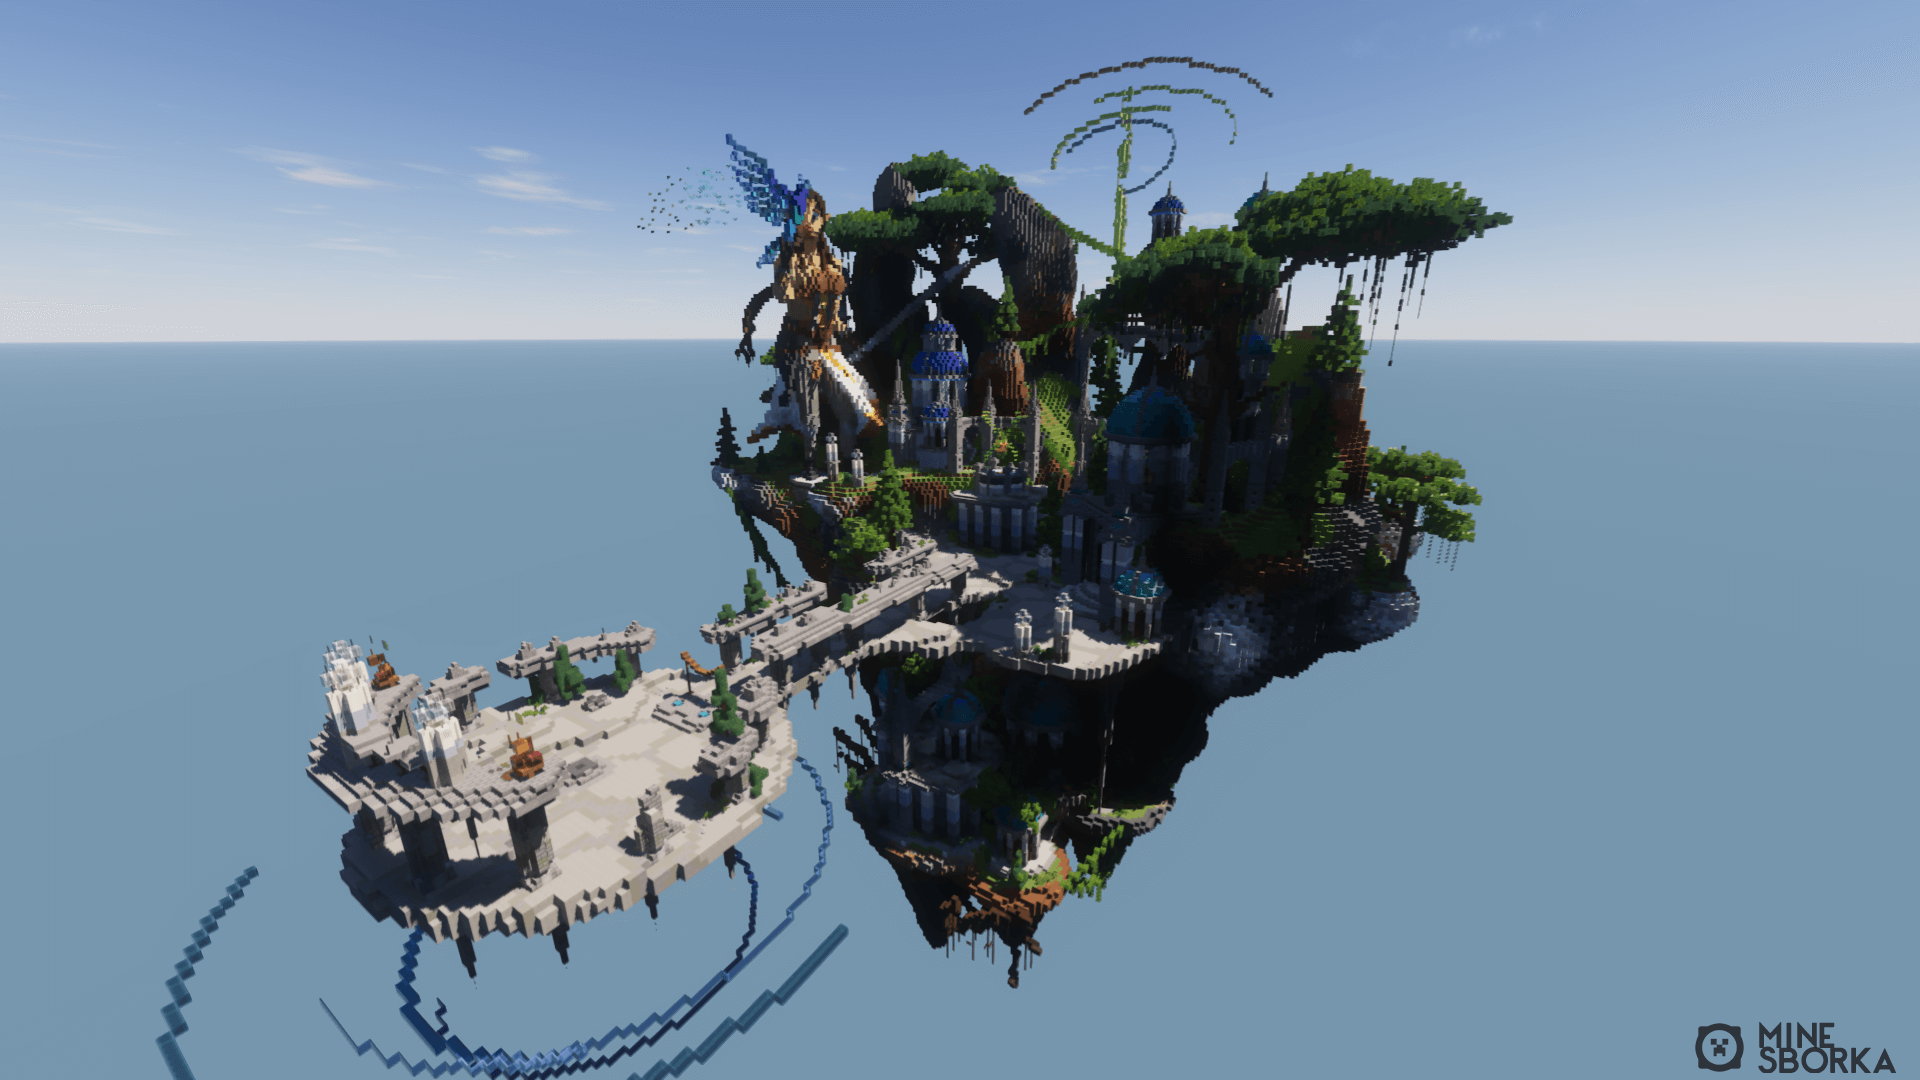 Lost Place - Скачать небольшое лобби в стиле летающего острова для сервера Minecraft